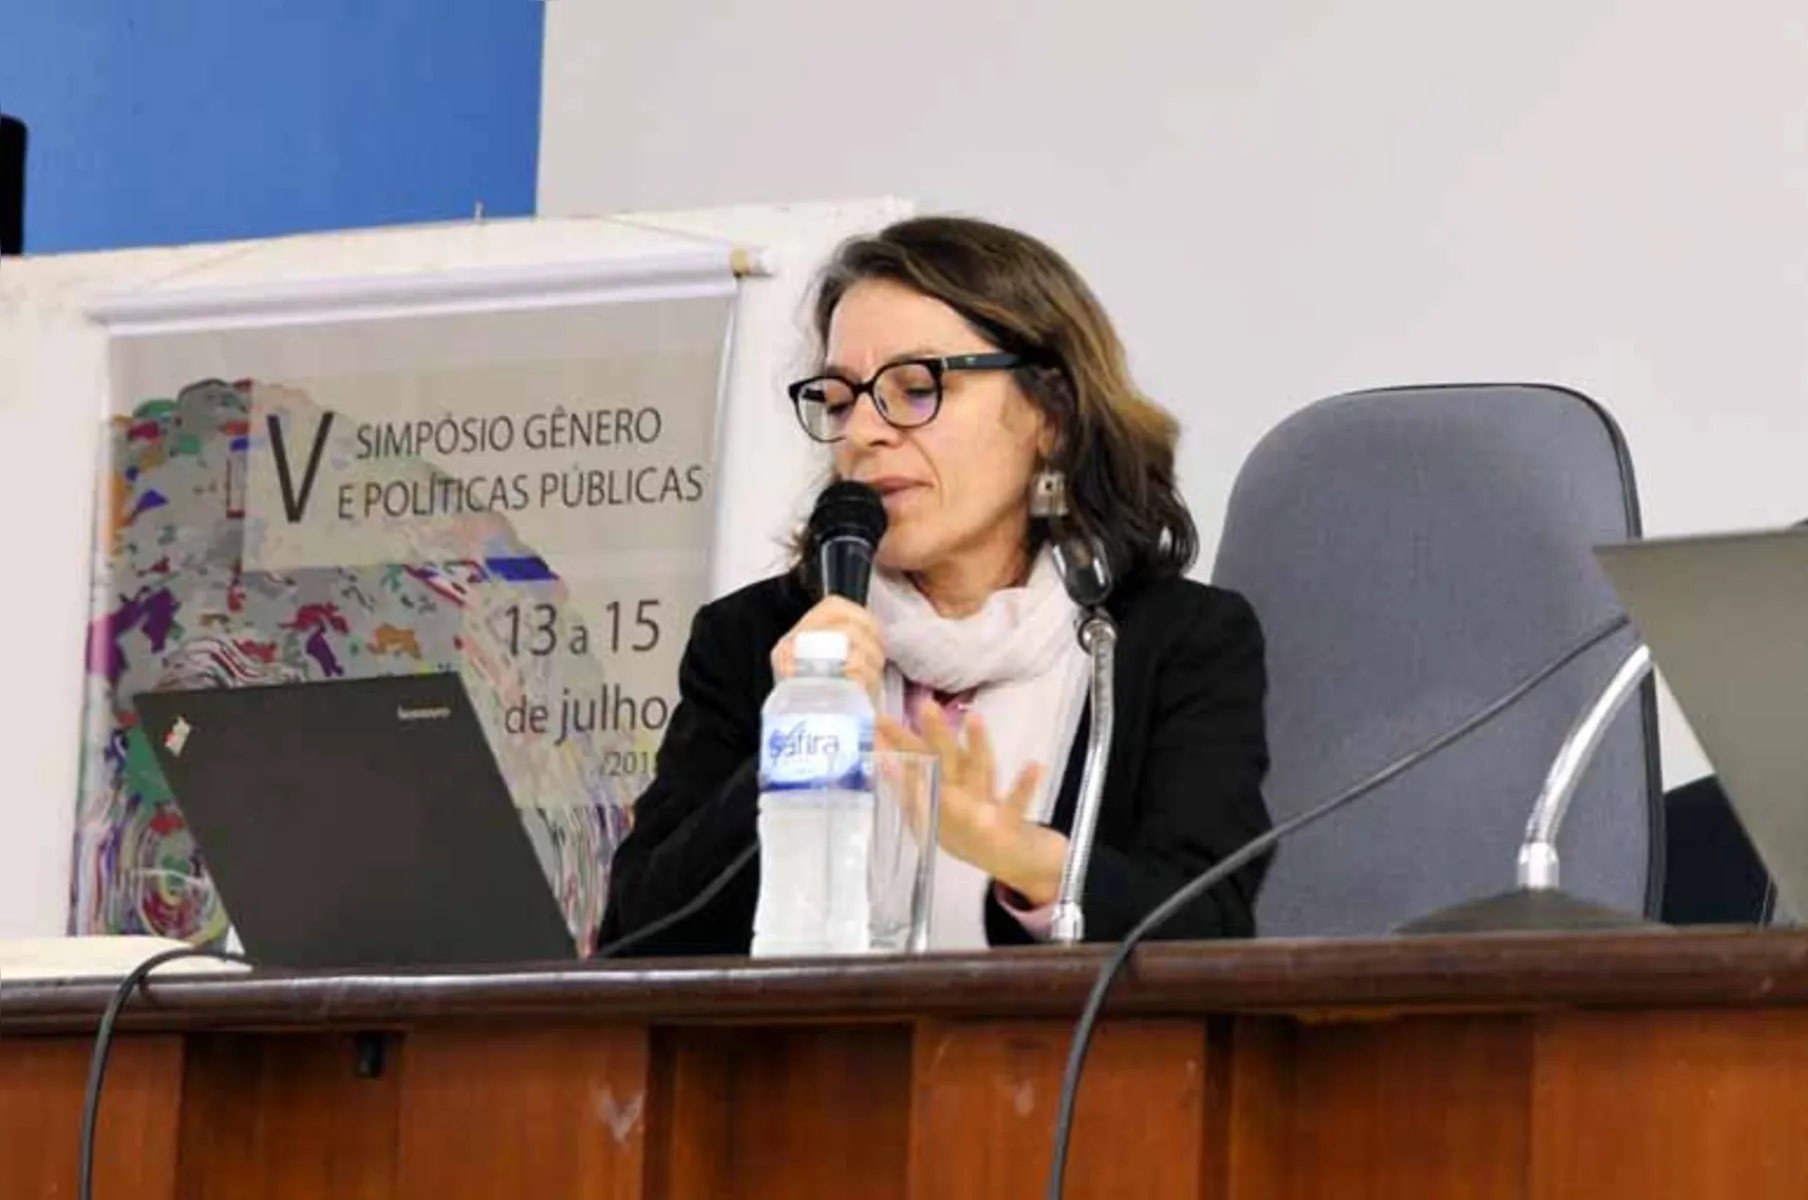 Em simpósio sobre "Gênero e Políticas Públicas", a pesquisadora Tereza Sacchet discutiu a representatividade feminina na política